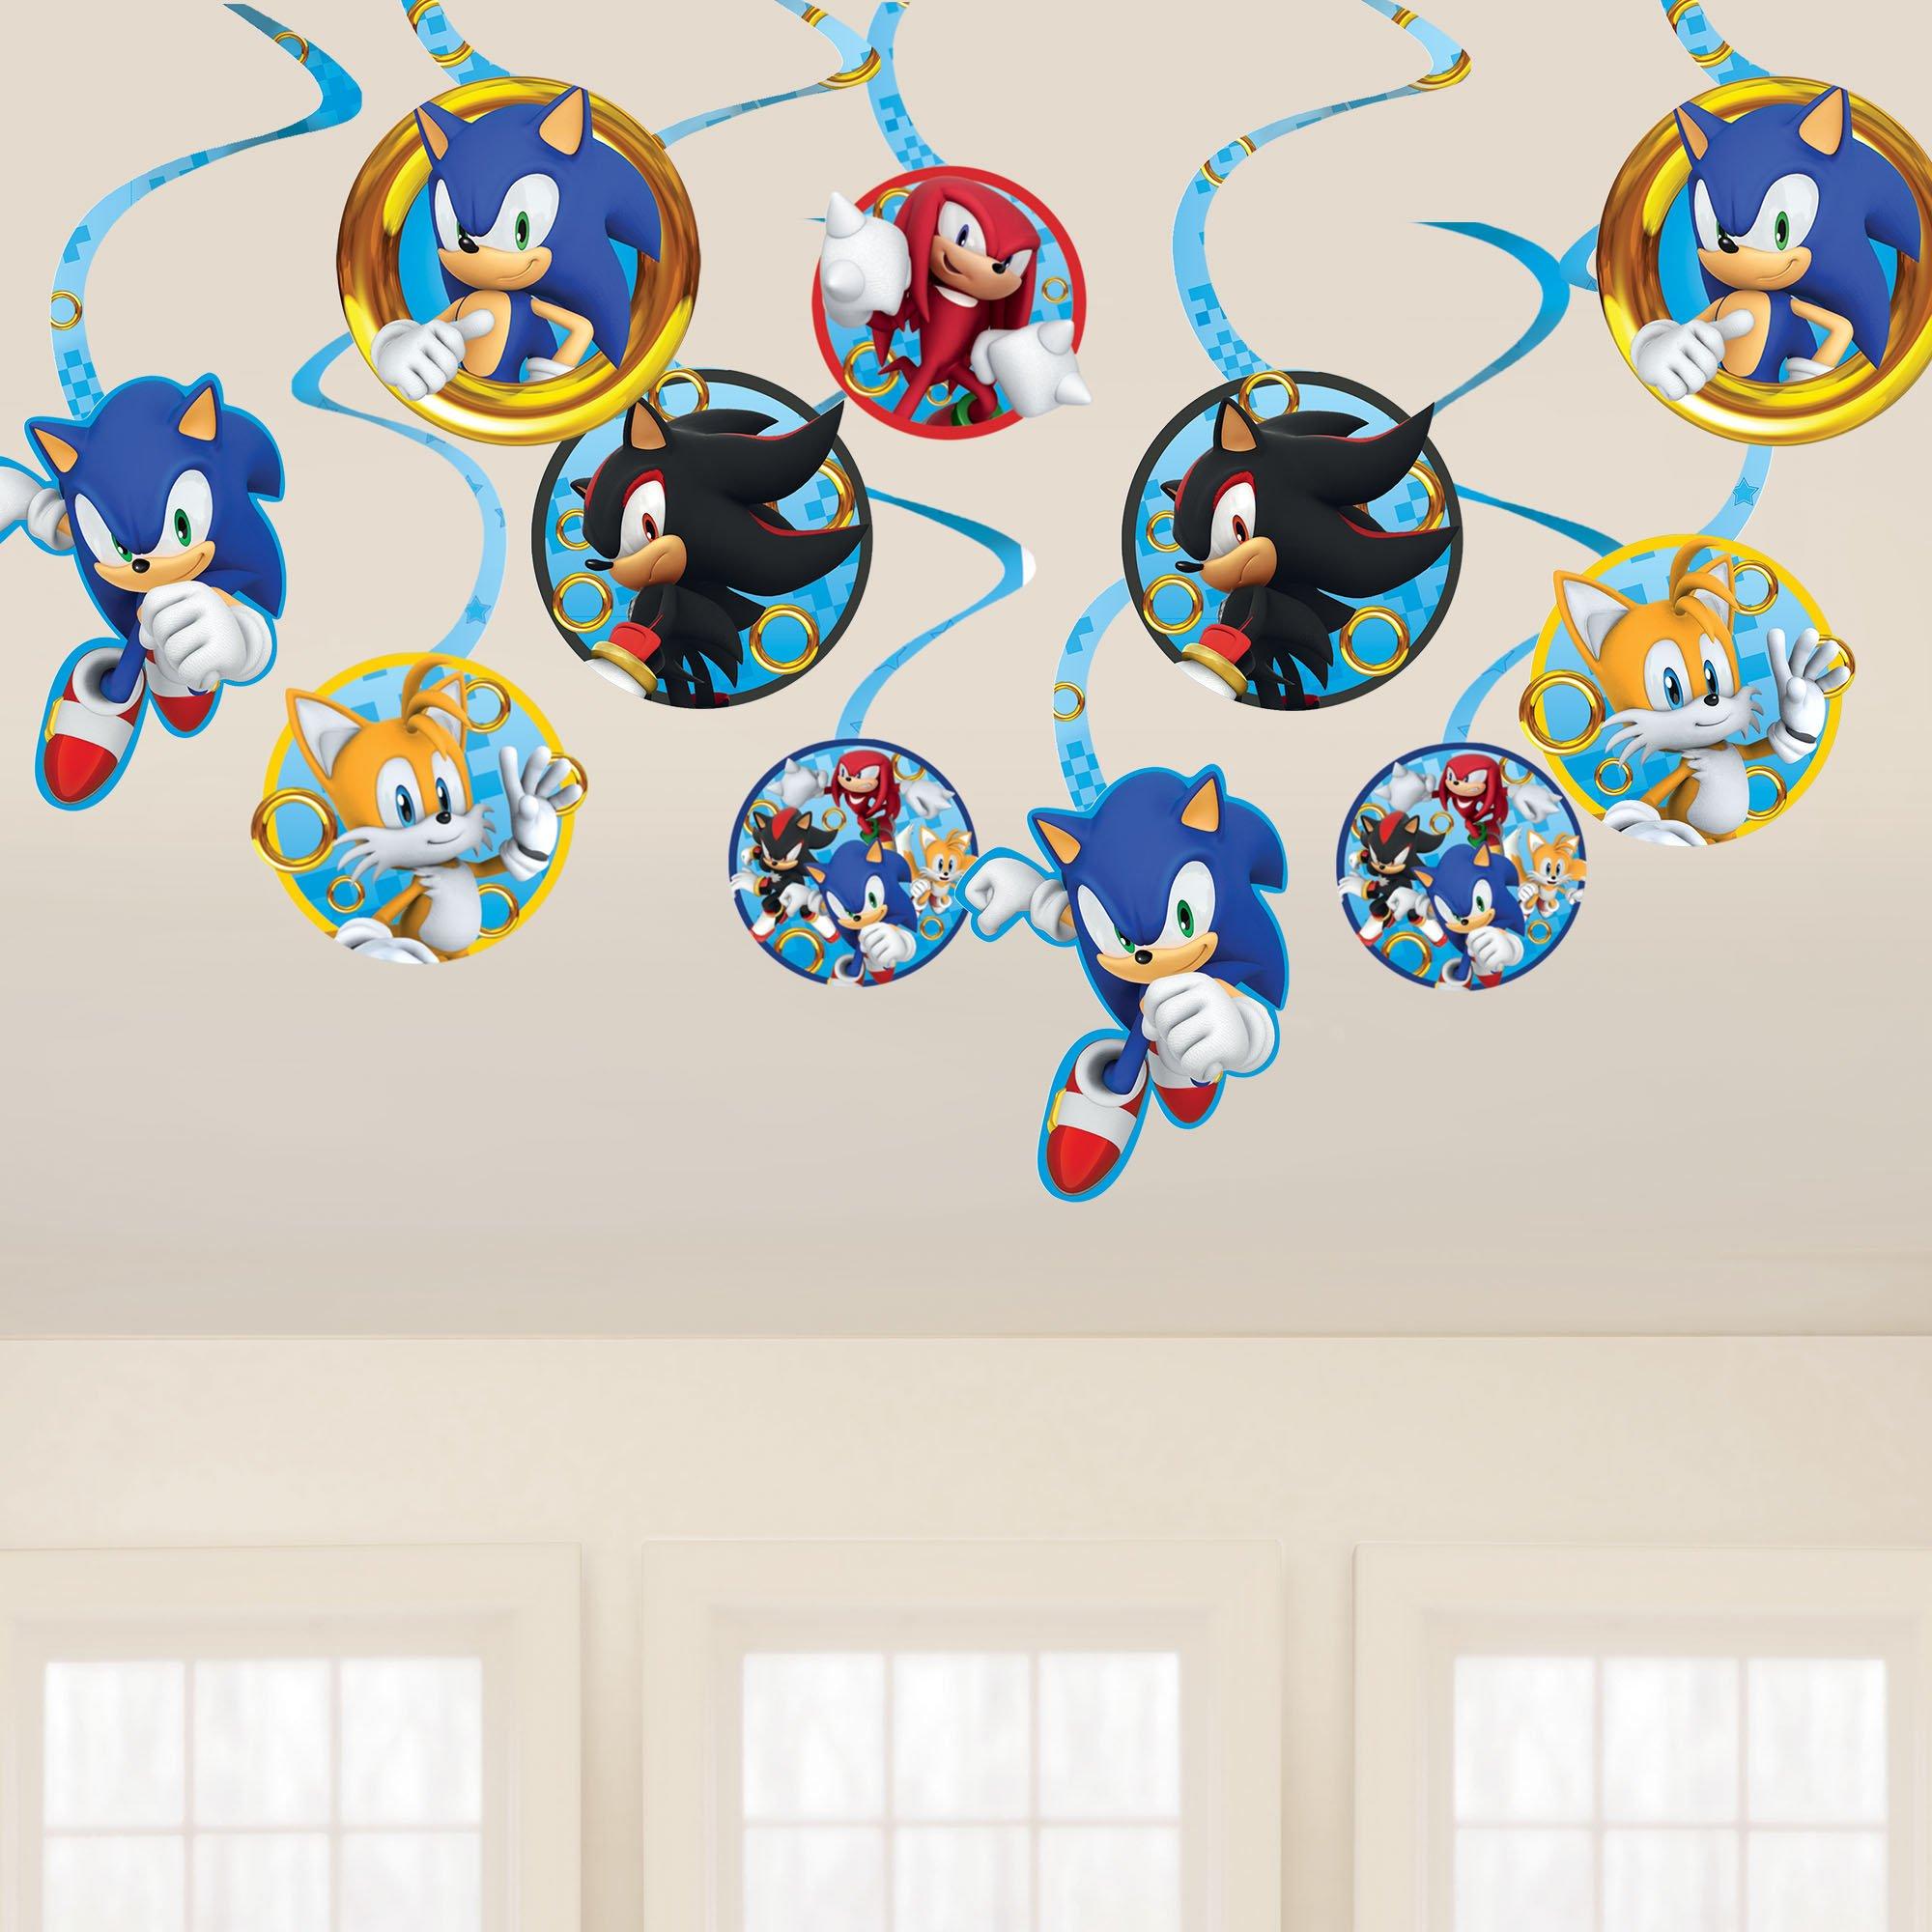 Sonic personalized decorative vinyl